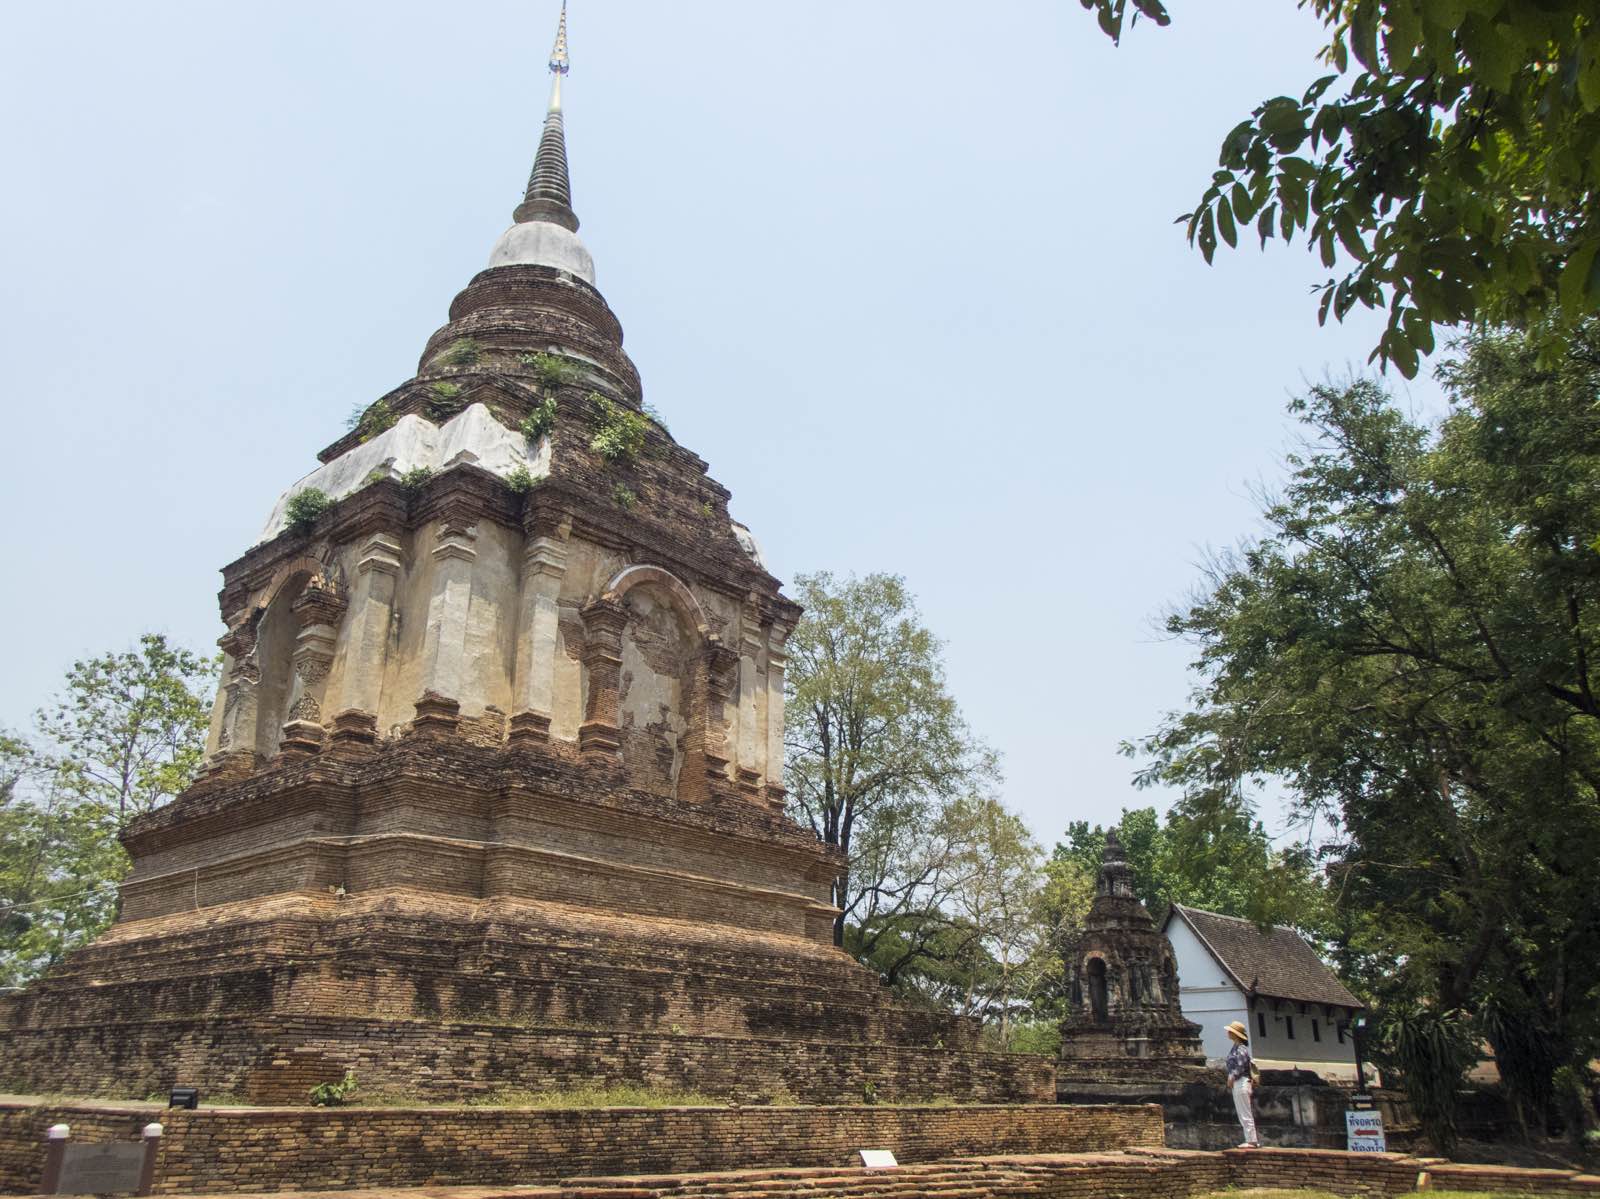 又称泽玉寺，建于1455年，寺内栽种来自印度的菩提树。1477年曾有1